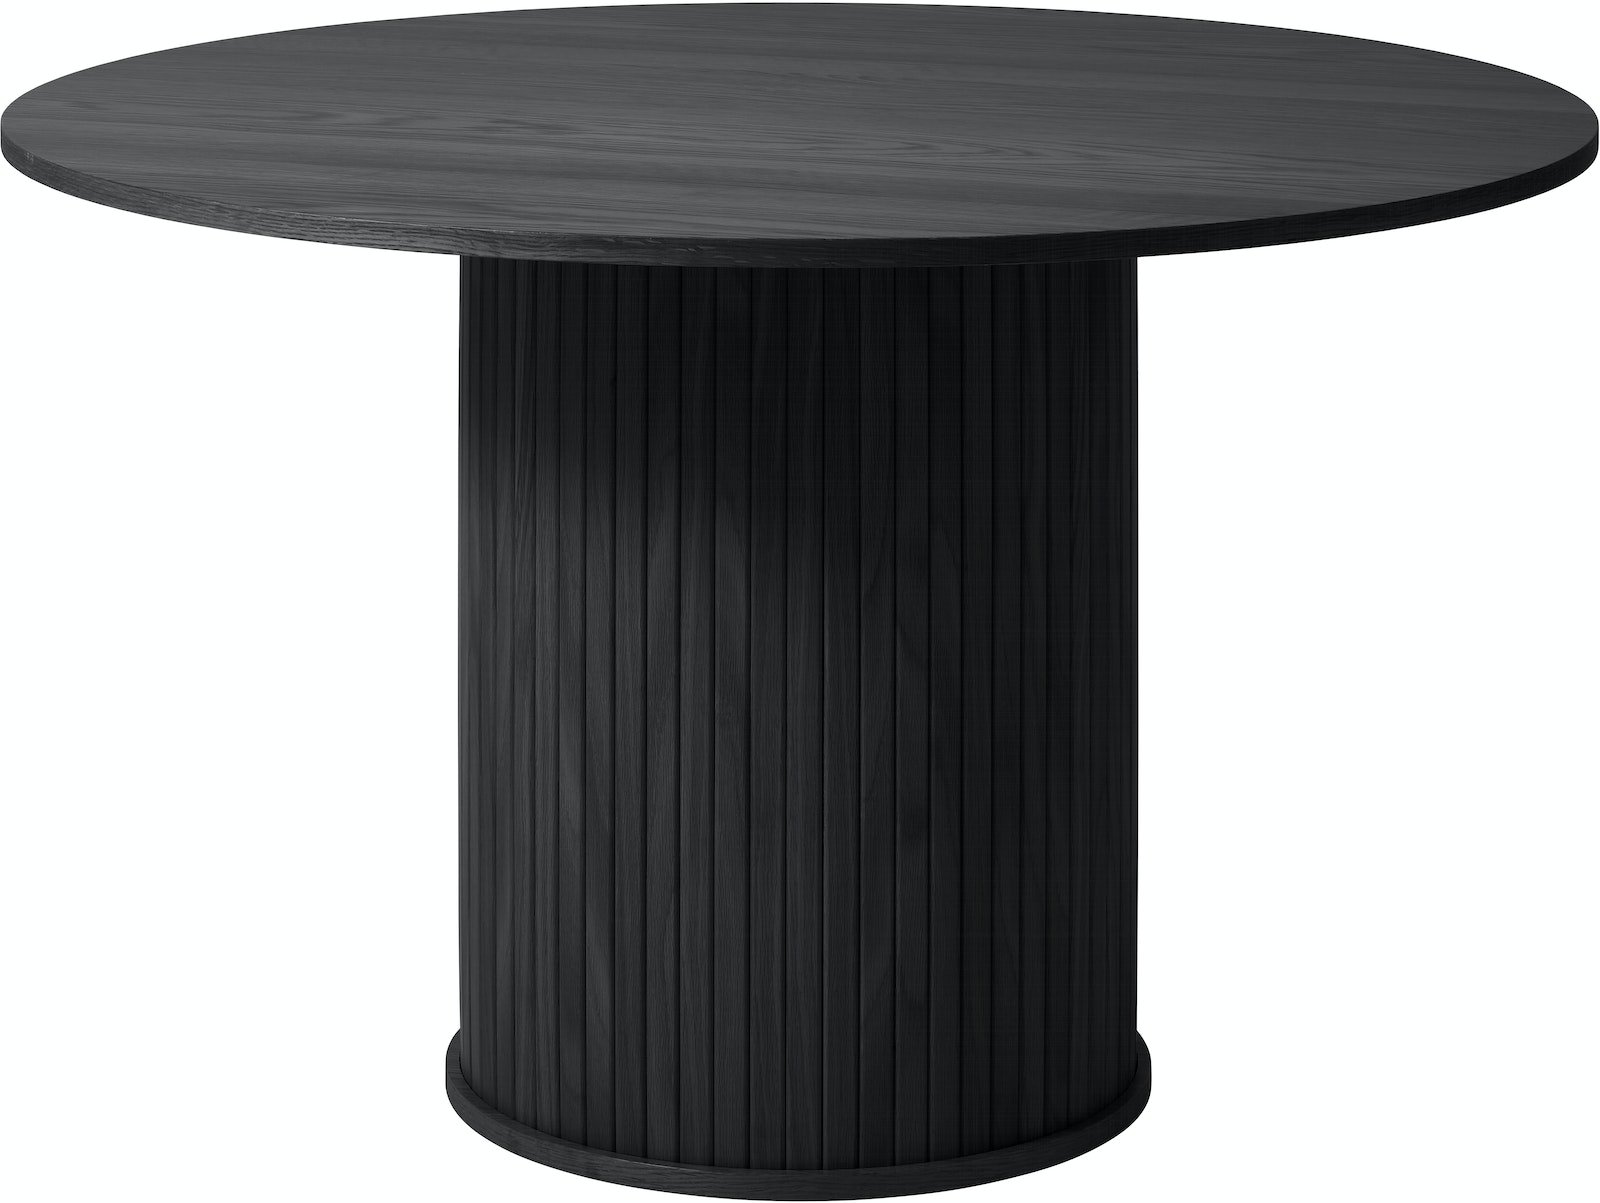 På billedet ser du variationen Nola, Rundt spisebord, egetræ fra brandet Unique Furniture i en størrelse H: 75 cm. x B: 120 cm. x L: 120 cm. i farven Sort